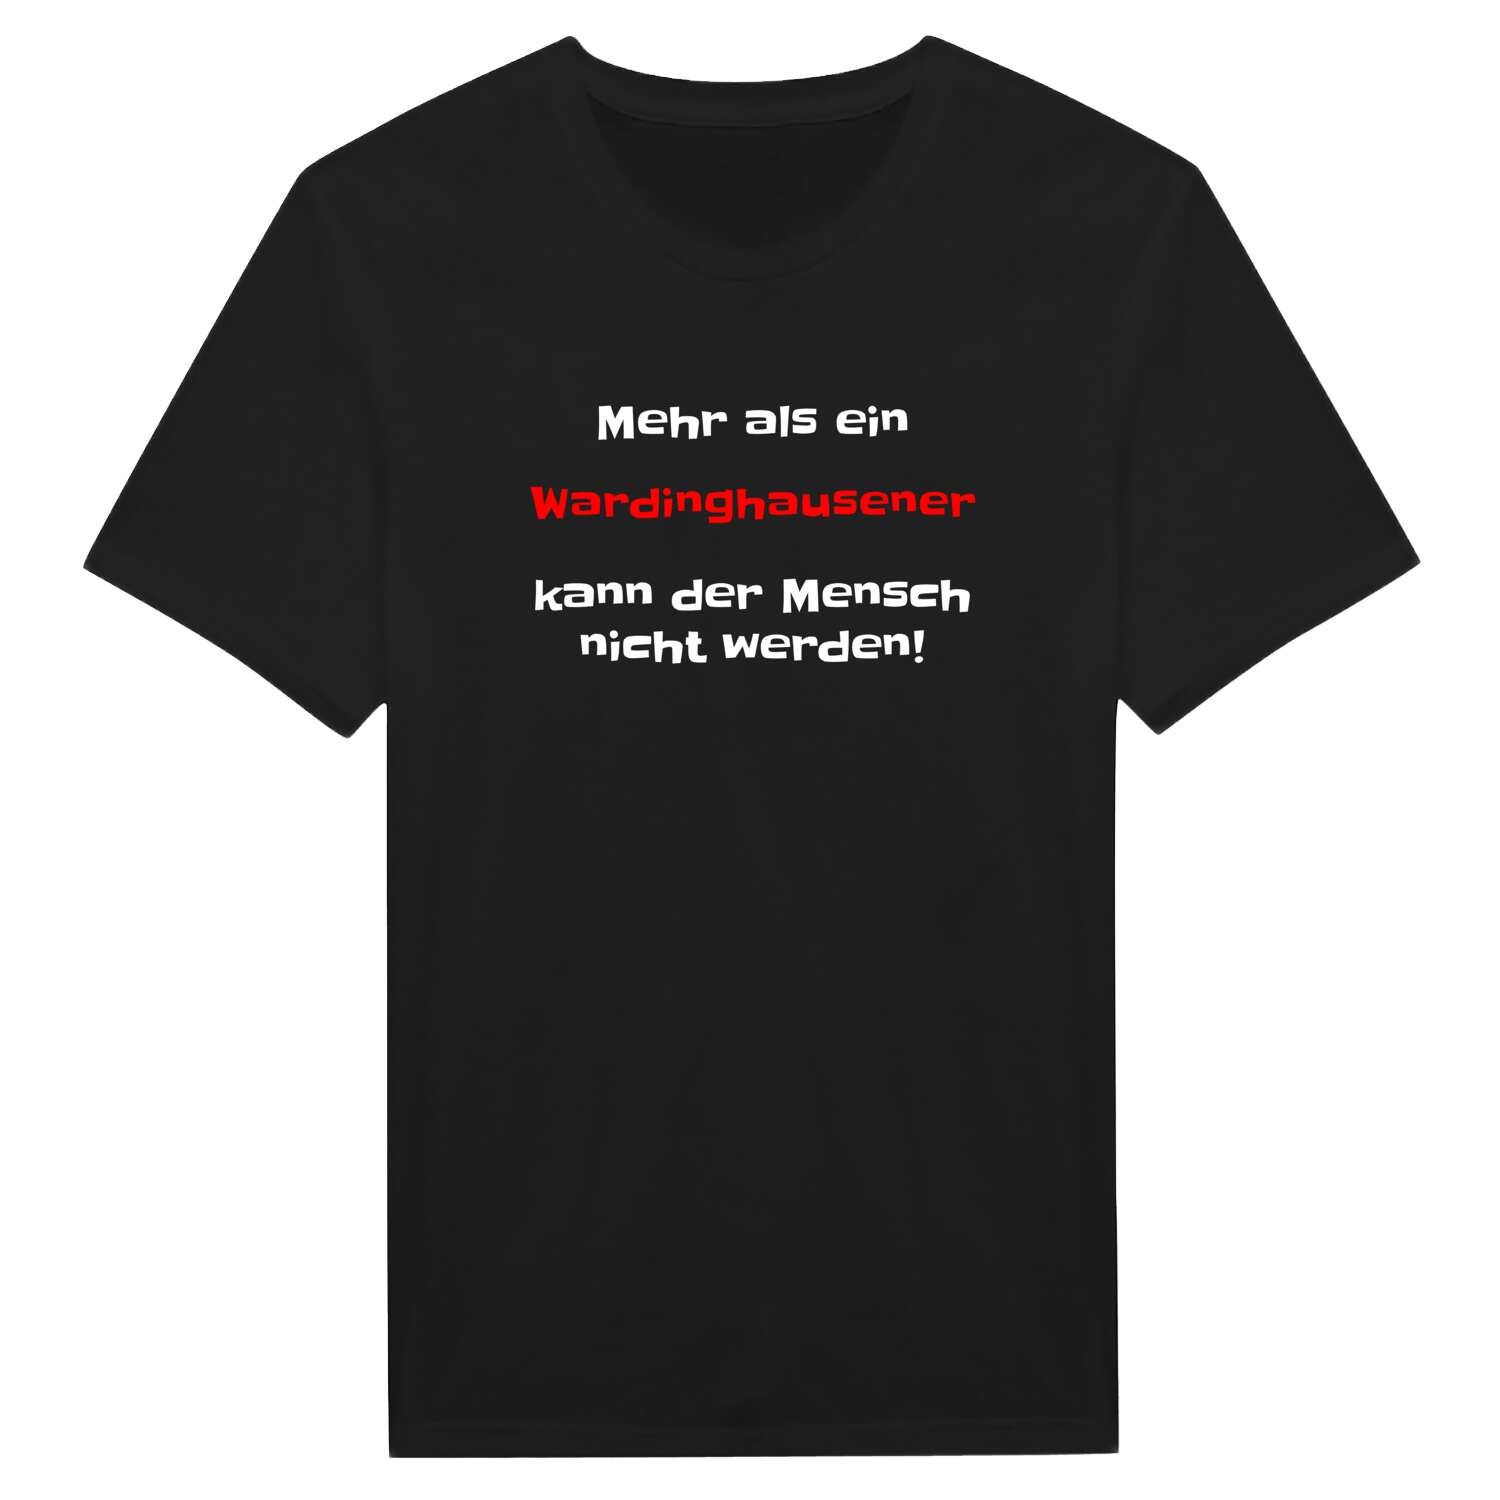 Wardinghausen T-Shirt »Mehr als ein«